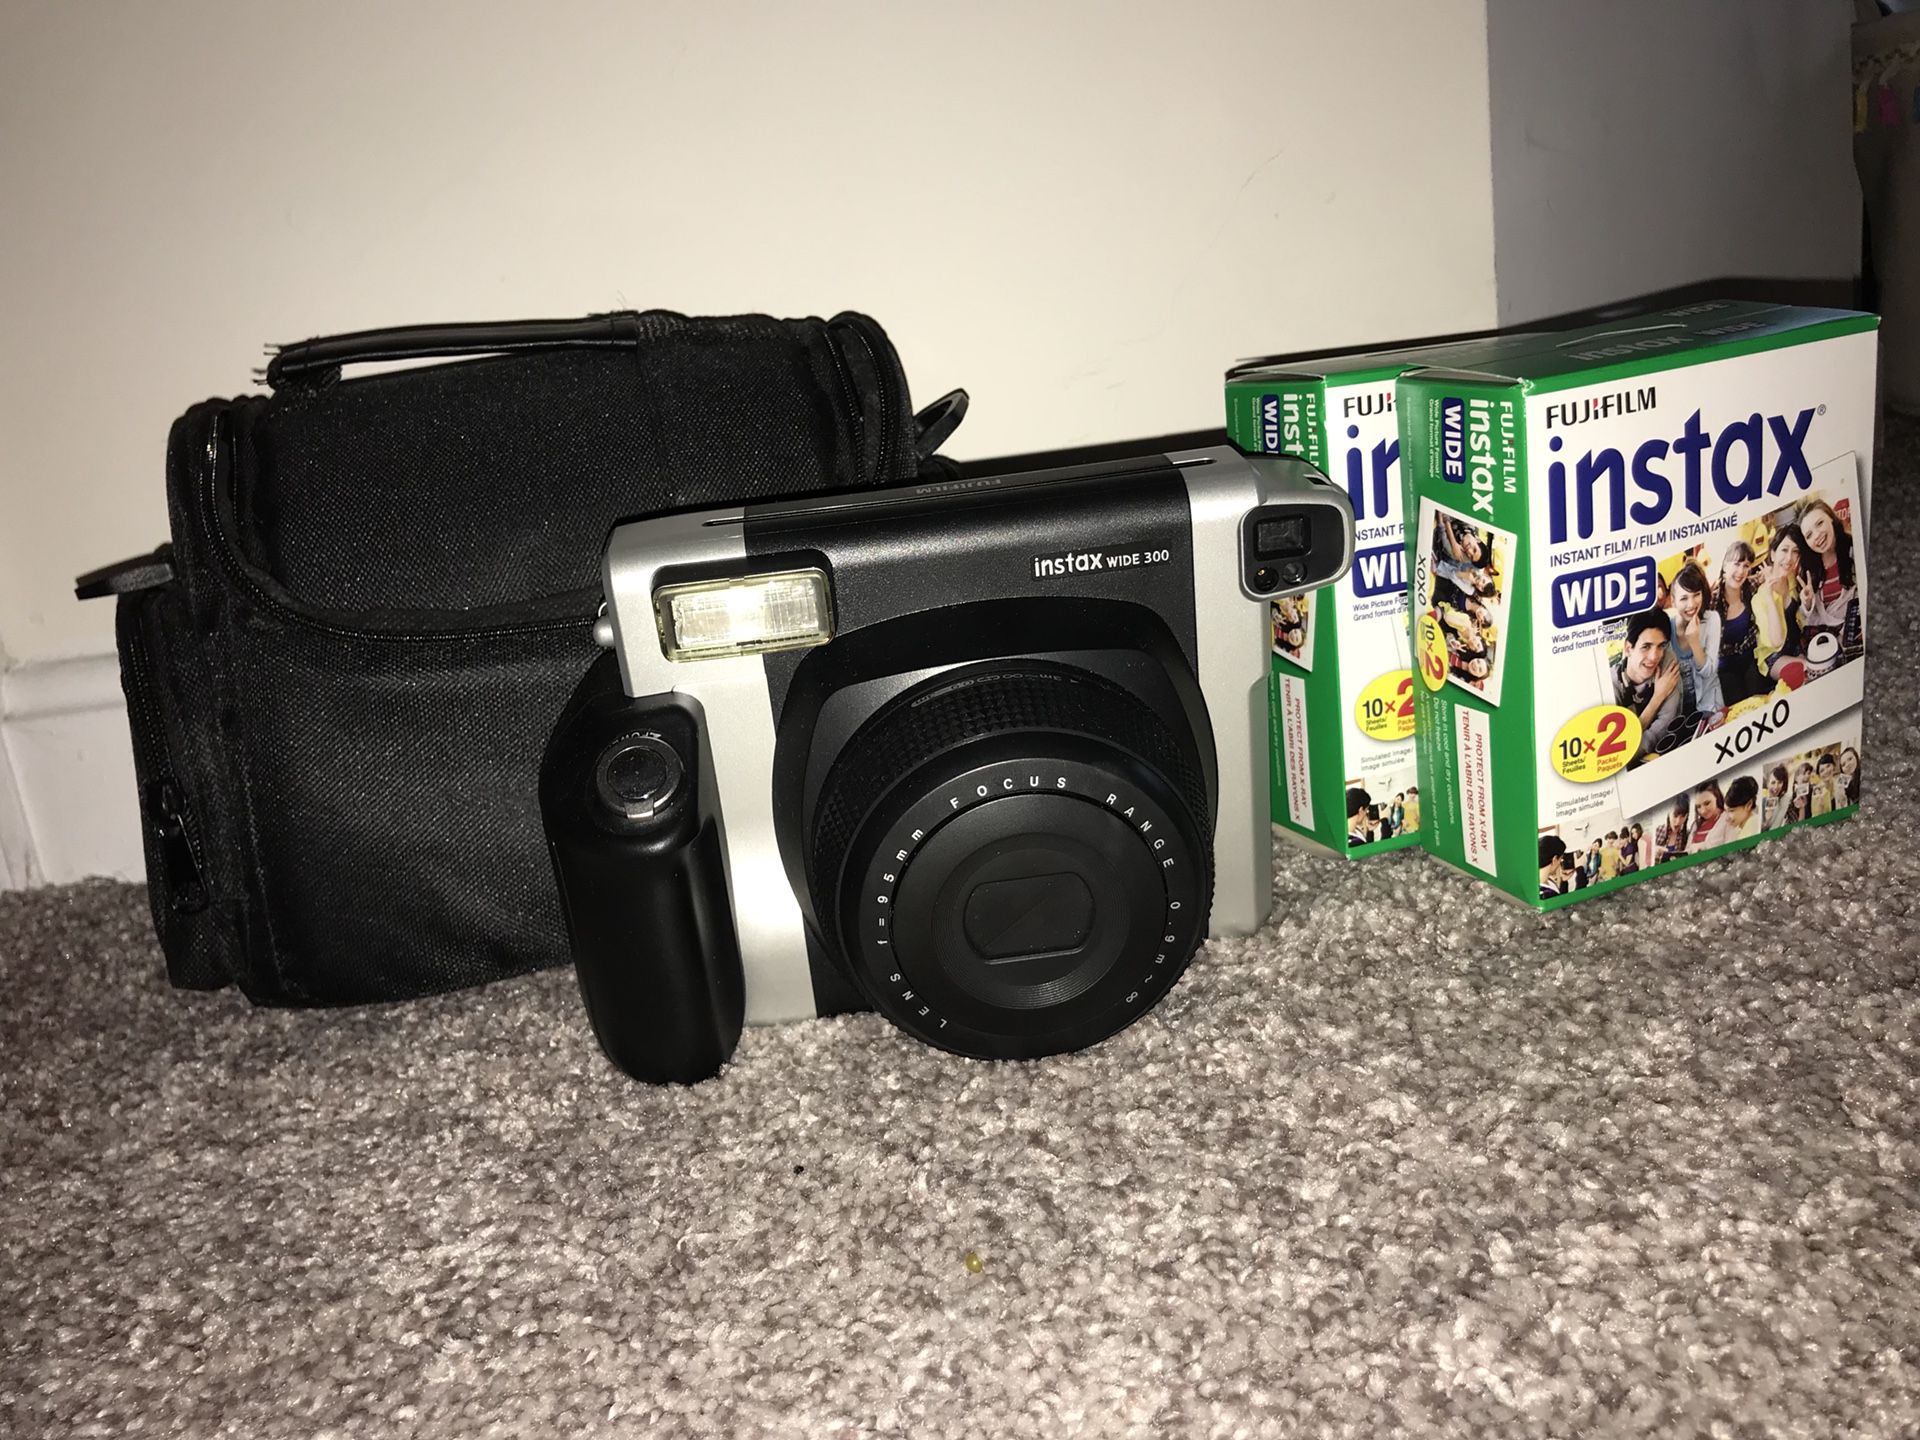 Fujifilm Instax Wide 300 Polaroid camera, film, and accessories